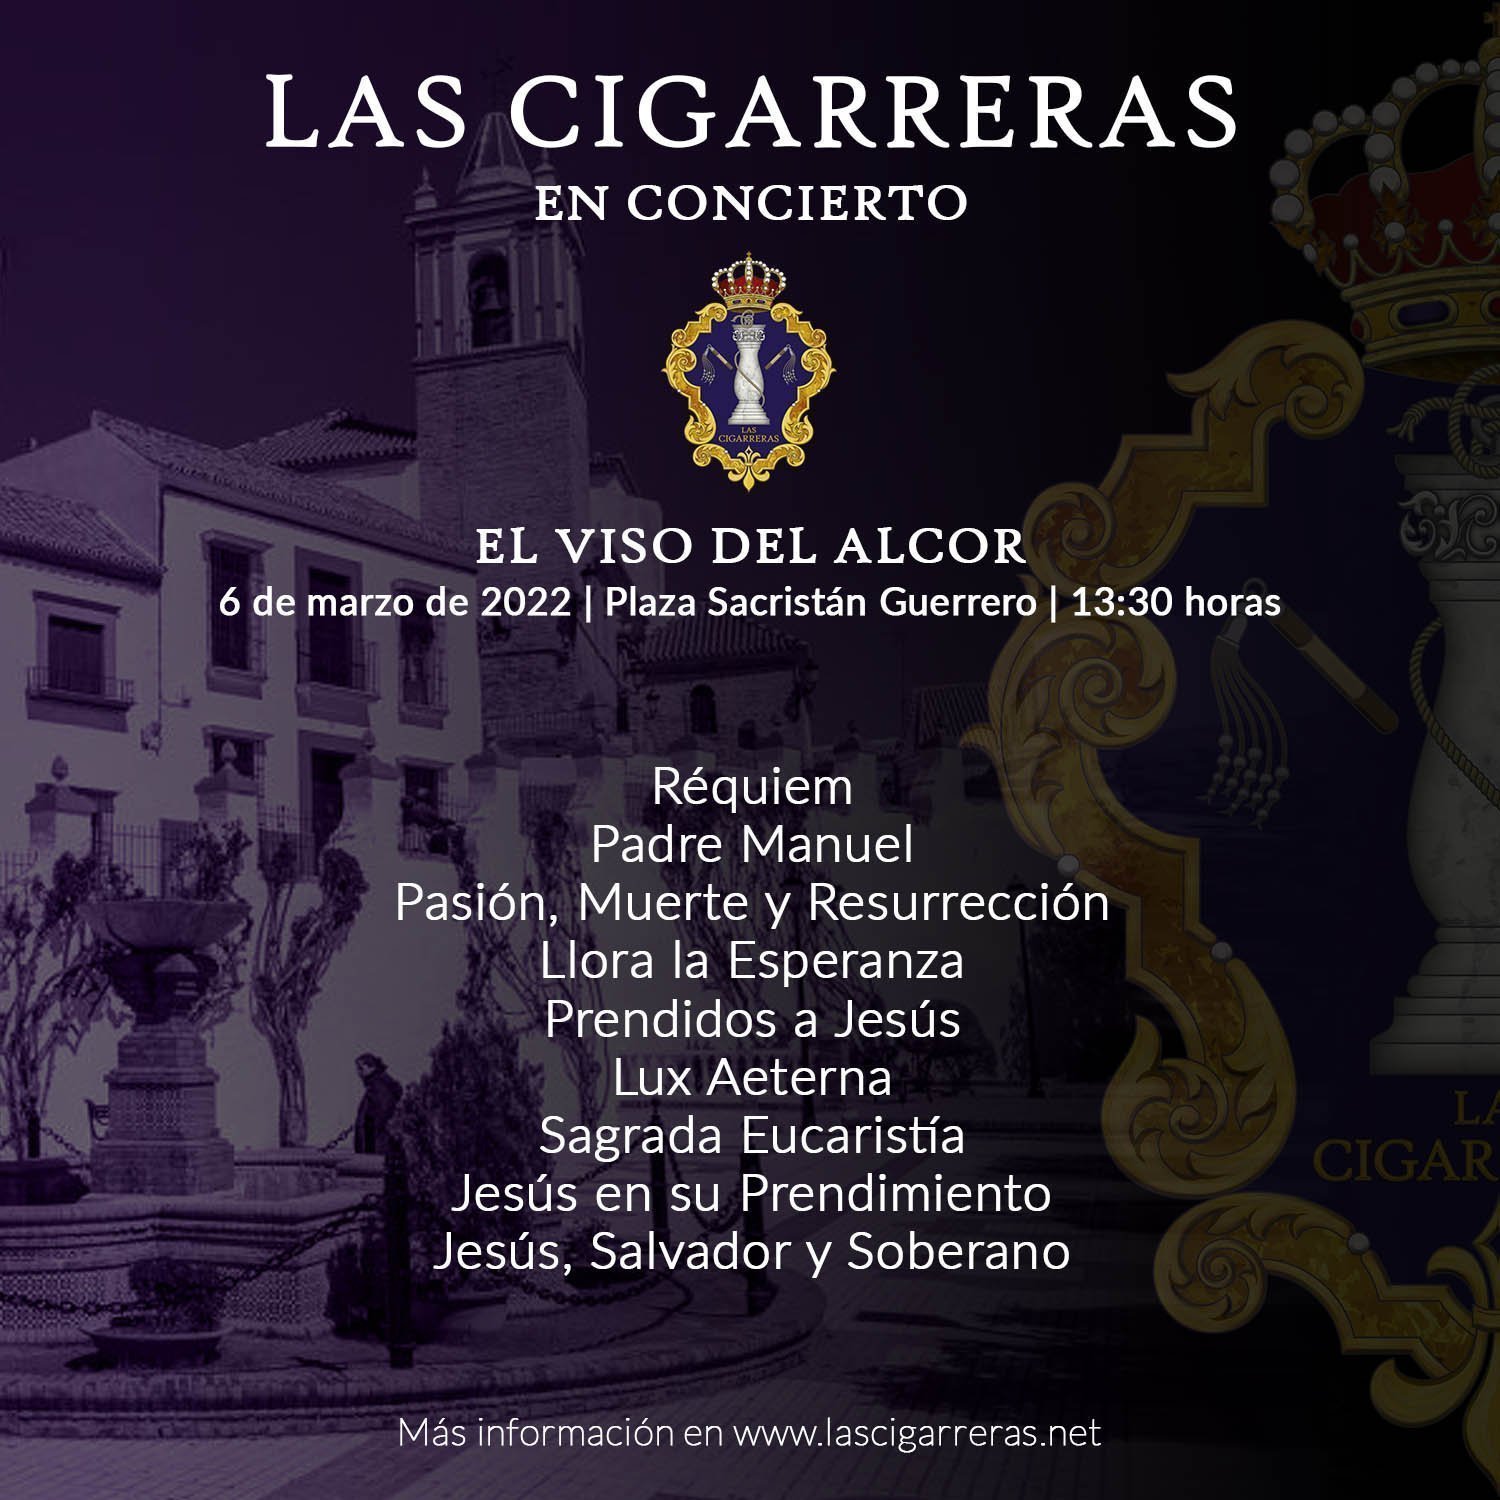 Programa del concierto de Las Cigarreras en El Viso del Alcor 2022